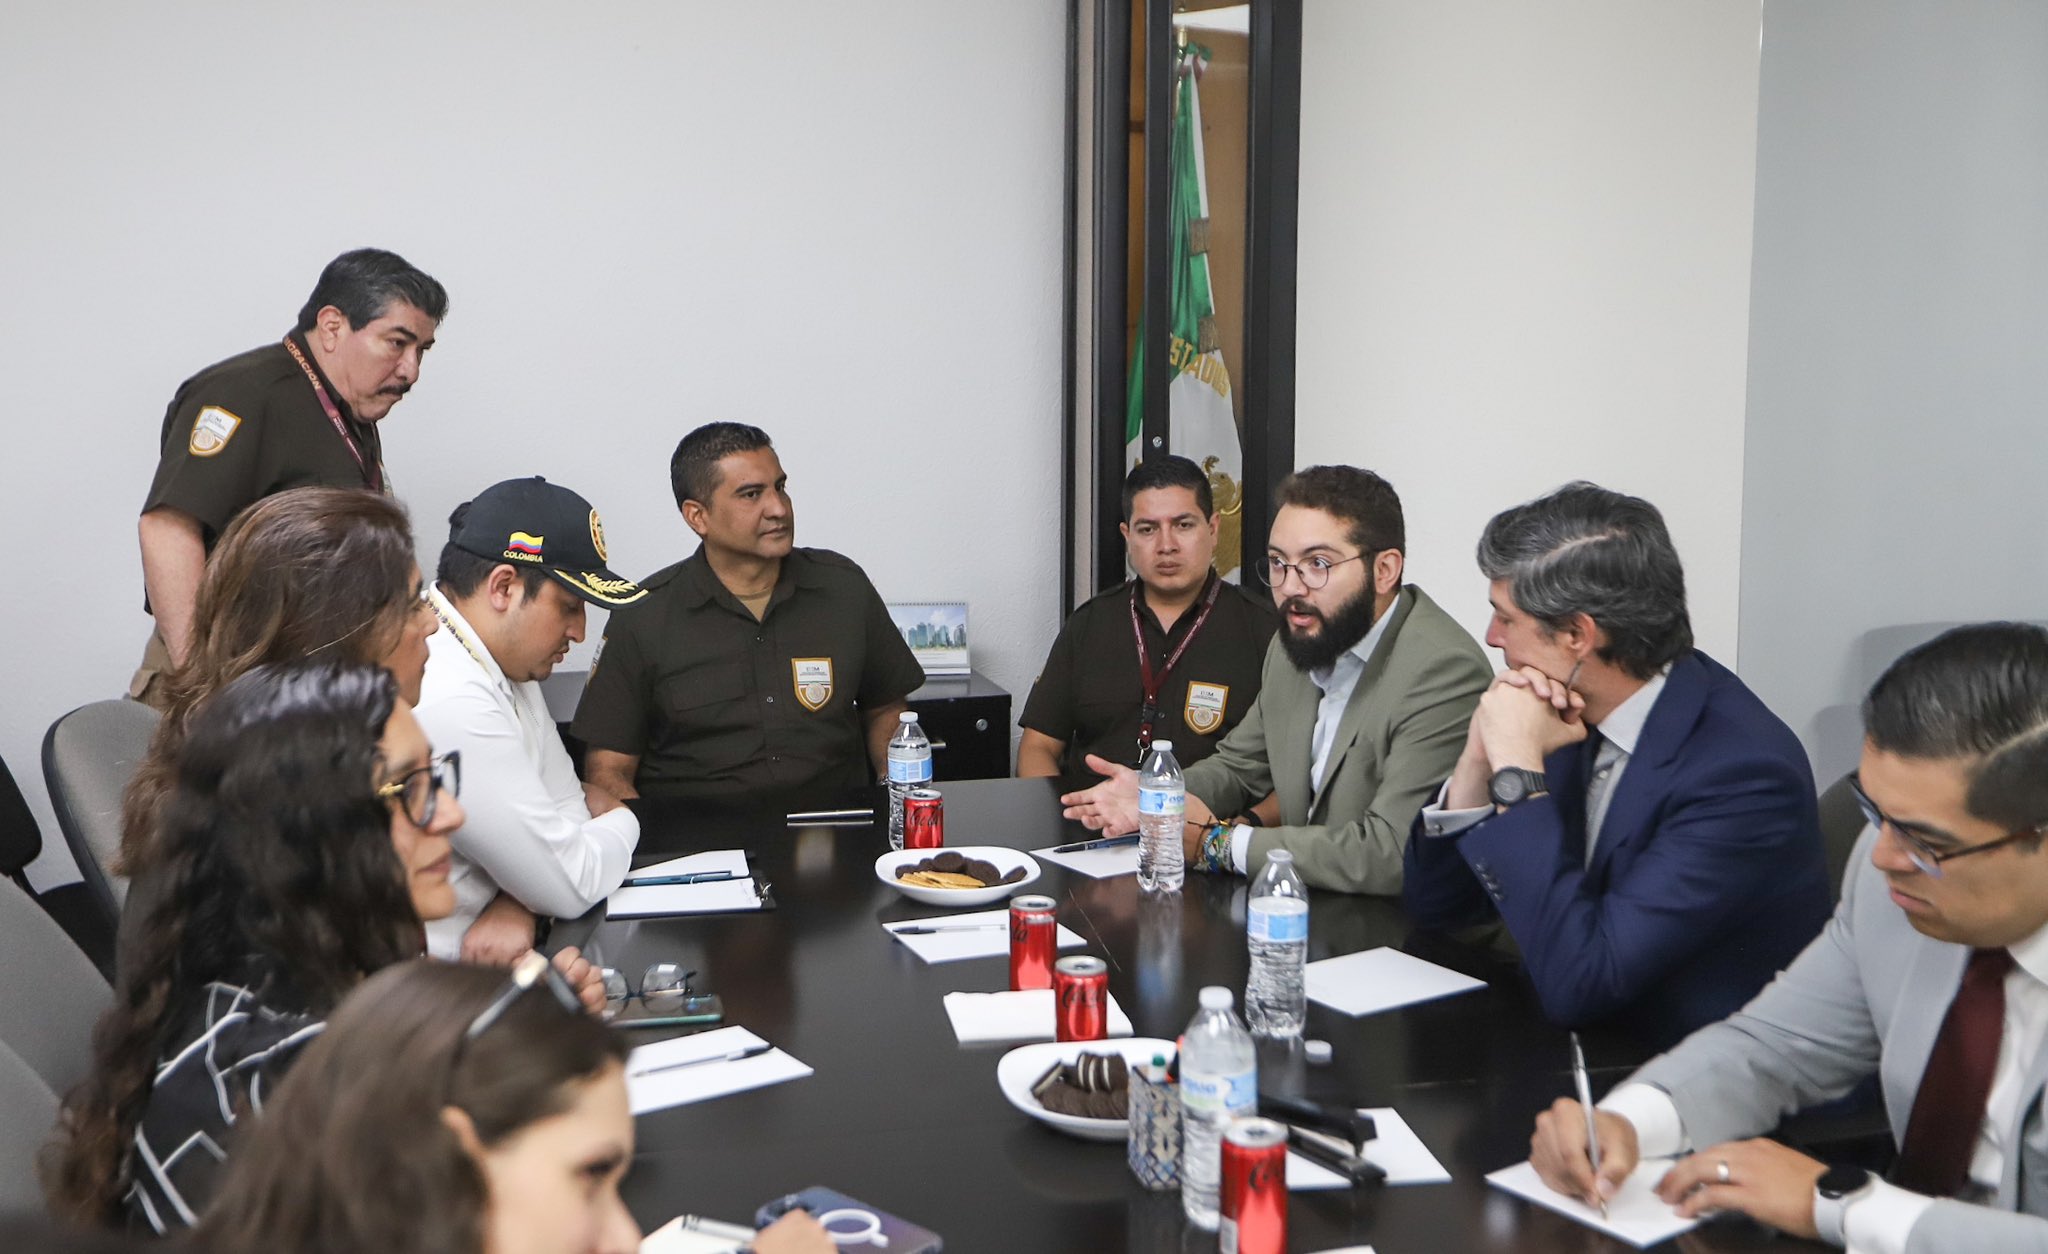 Embajador y cónsul en México visitaron aeropuerto de Ciudad de México para  verificar situación de colombianos inadmitidos - Eje21